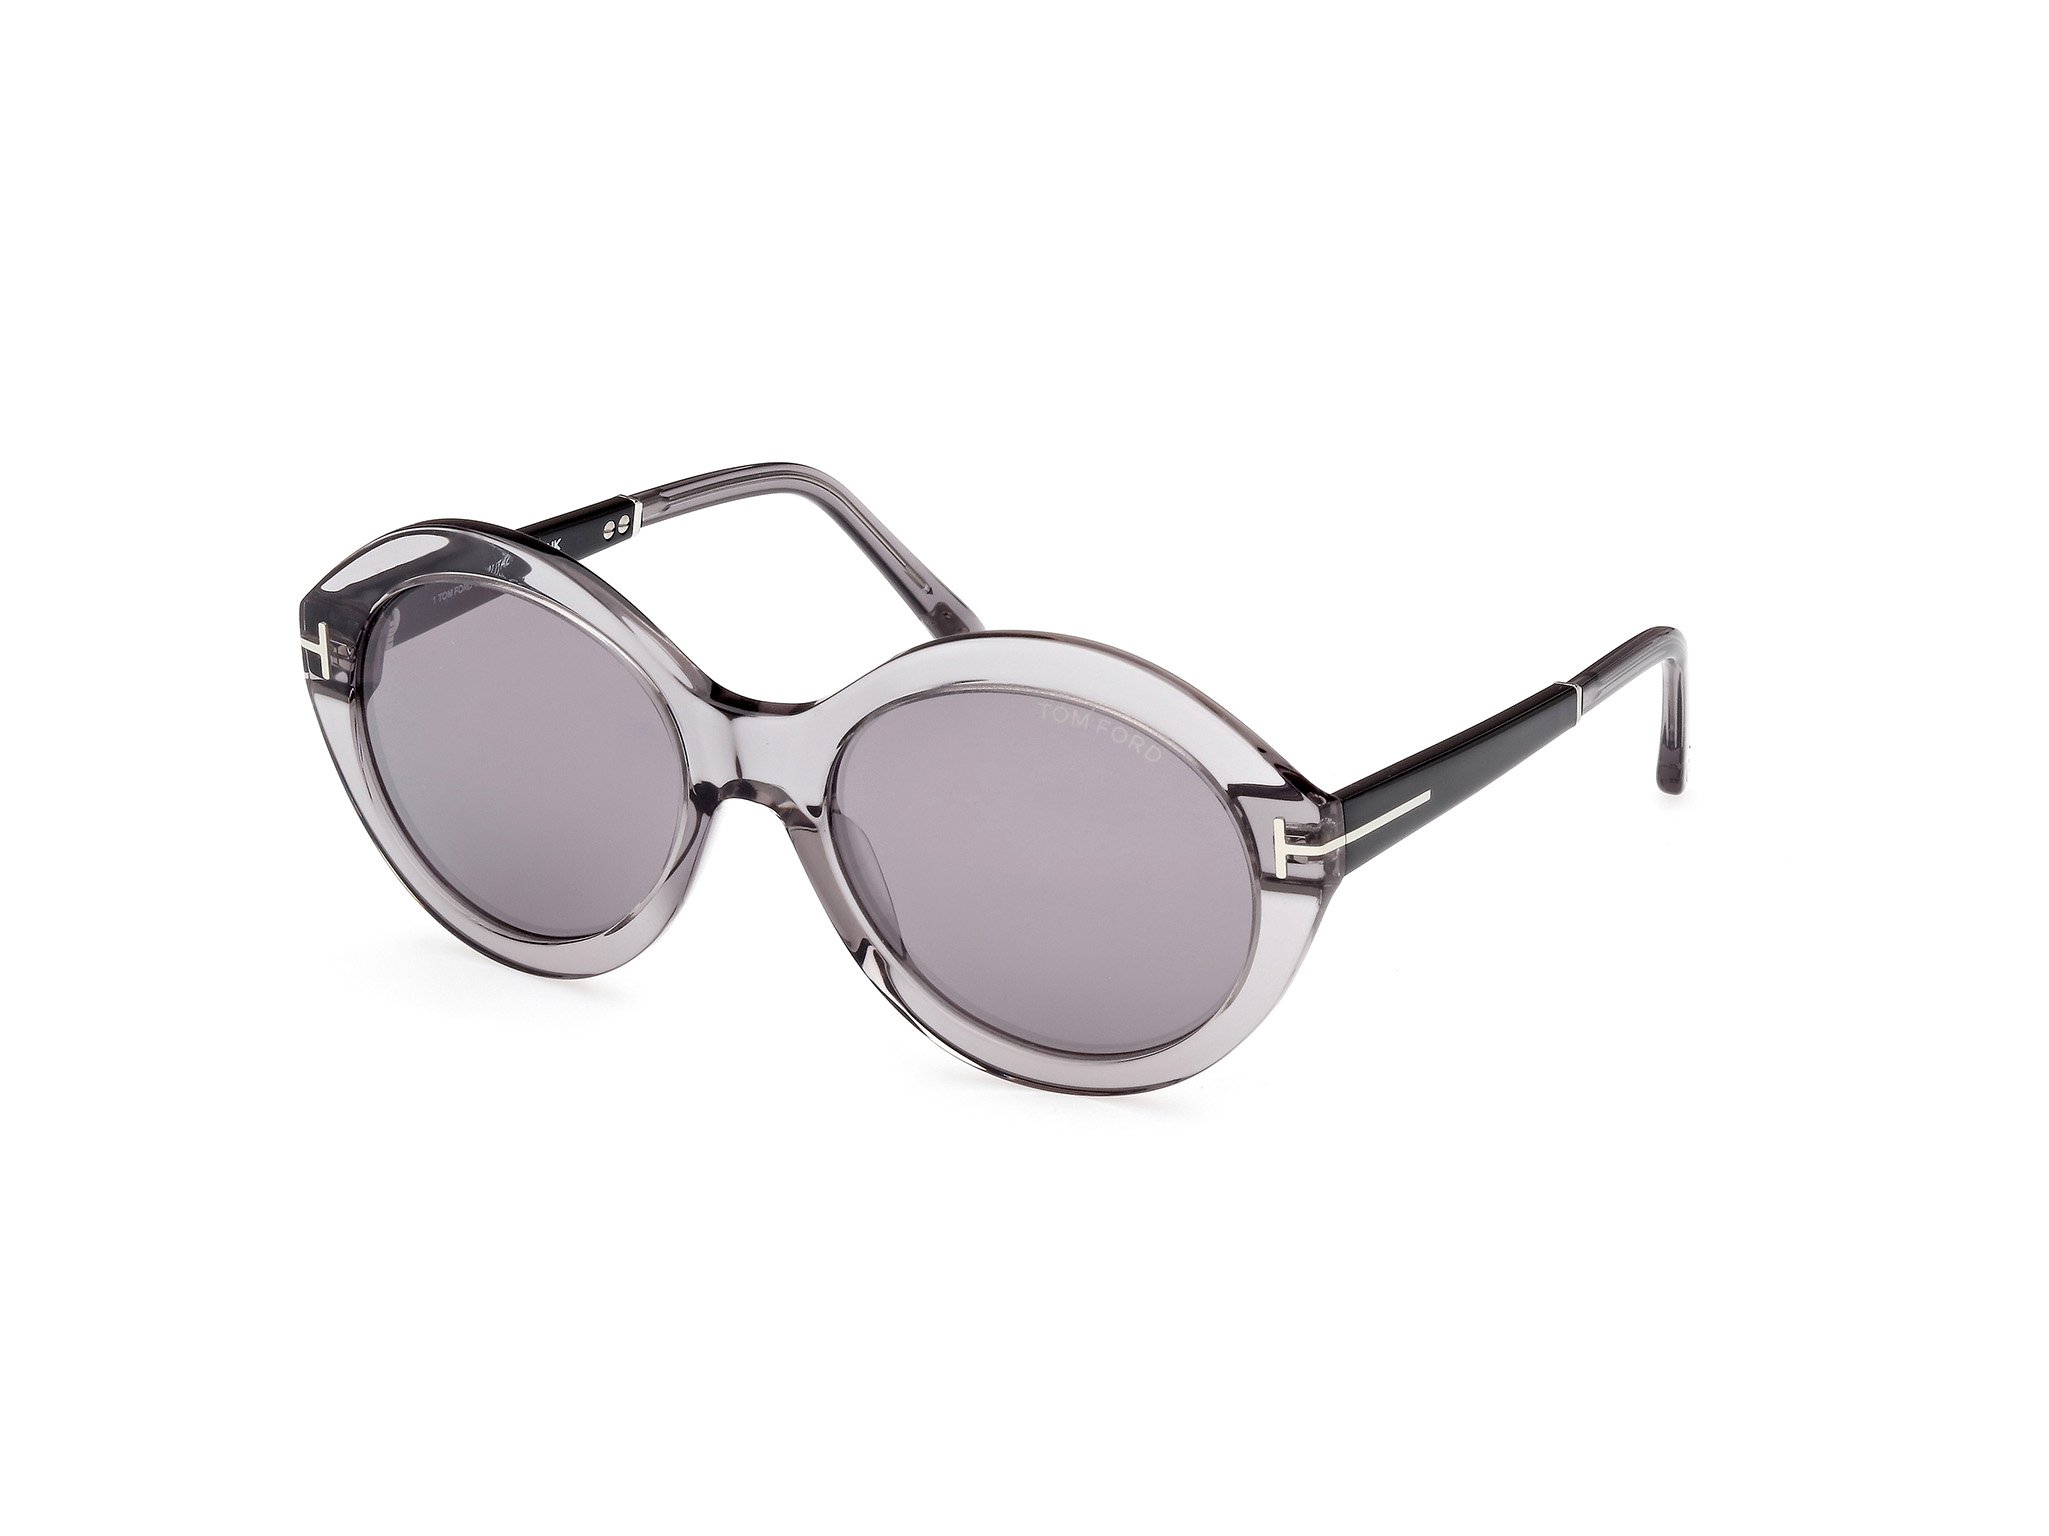  Tom Ford Sonnenbrille Seraphina in grau/schwarz FT1088 20C